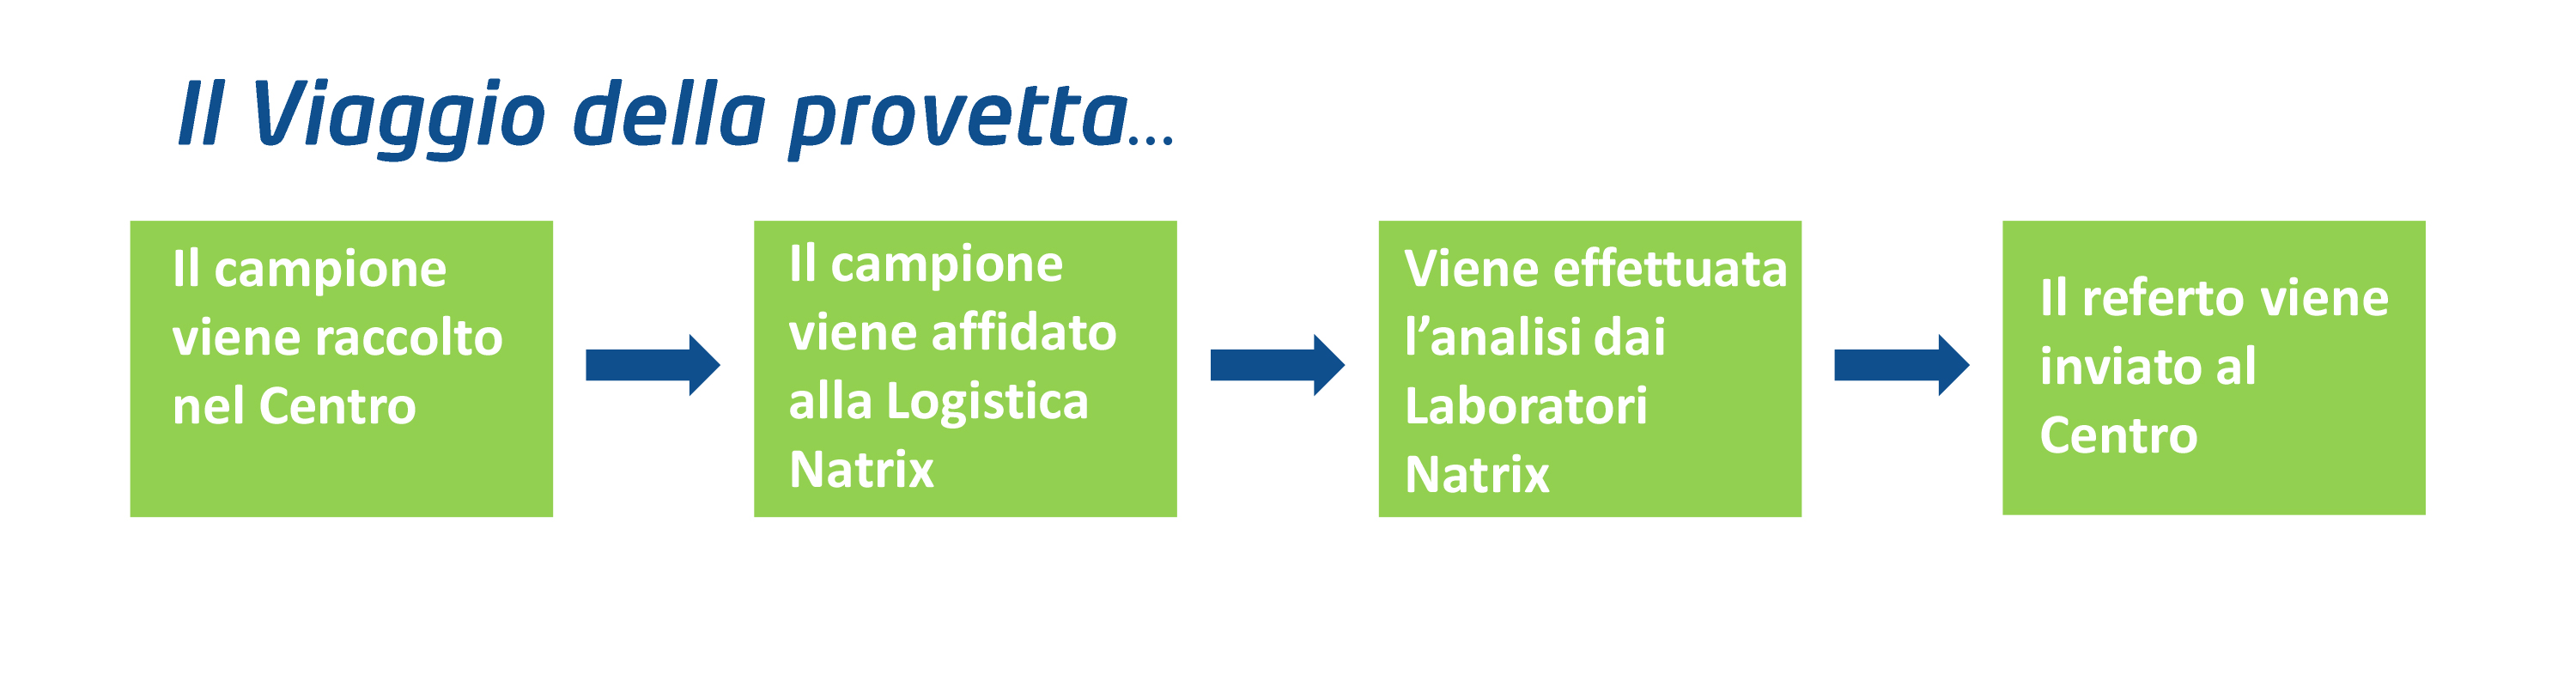 descrizione processo del service di laboratorio